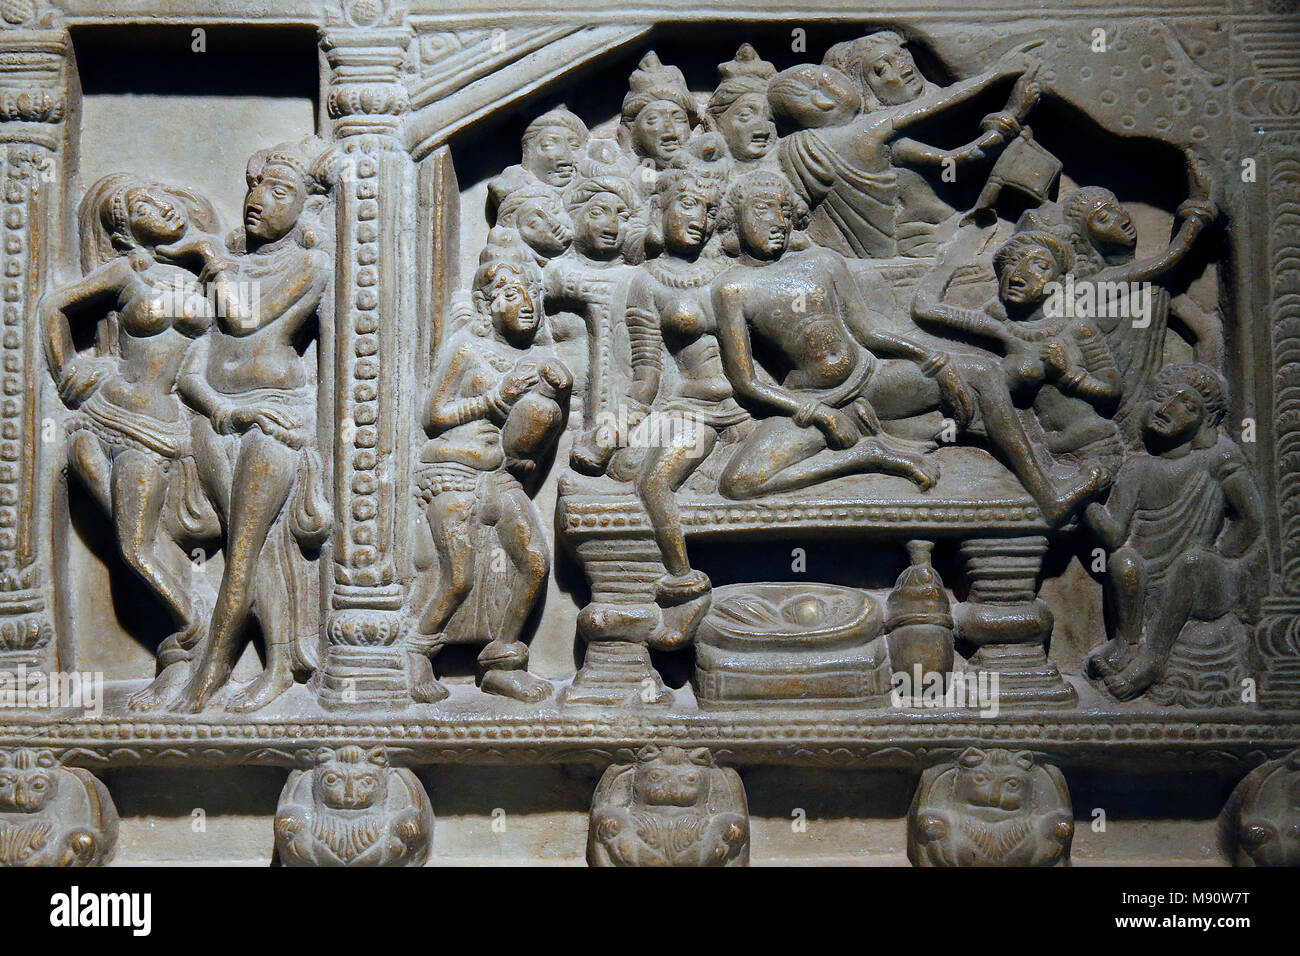 Museo Nazionale dell'India, New Delhi. Ayaga fregio raffigura scene del Buddha e la vita dal Jakatas. Ikshvaku, del III secolo D.C. Nagarjunakonda, e Foto Stock